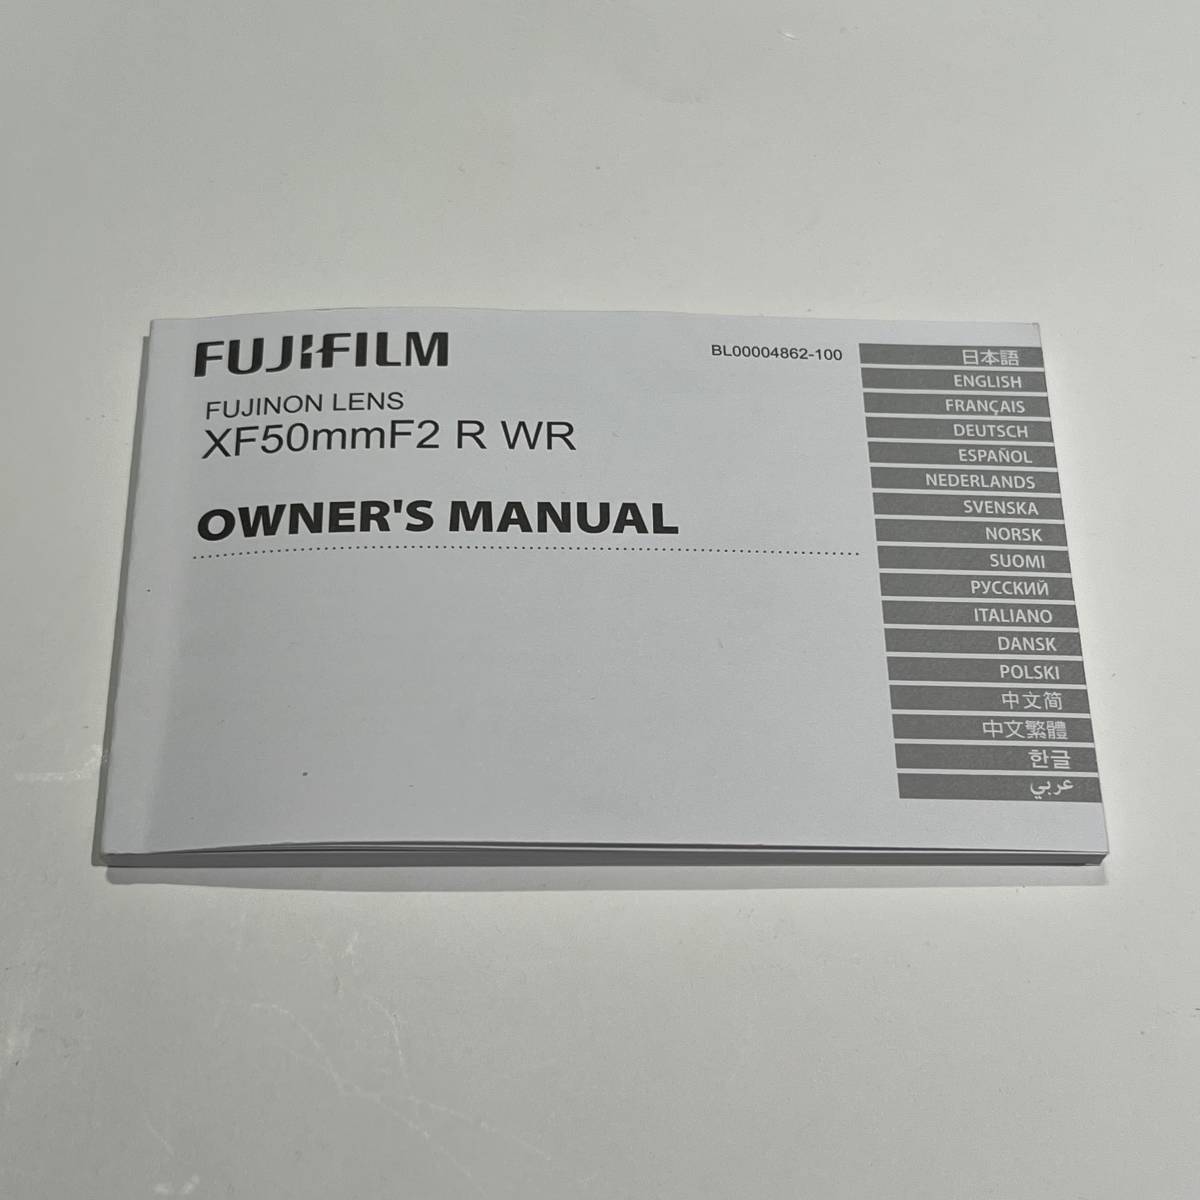 FUJIFILM Fuji Film XF50mmF2 R WR instructions only 